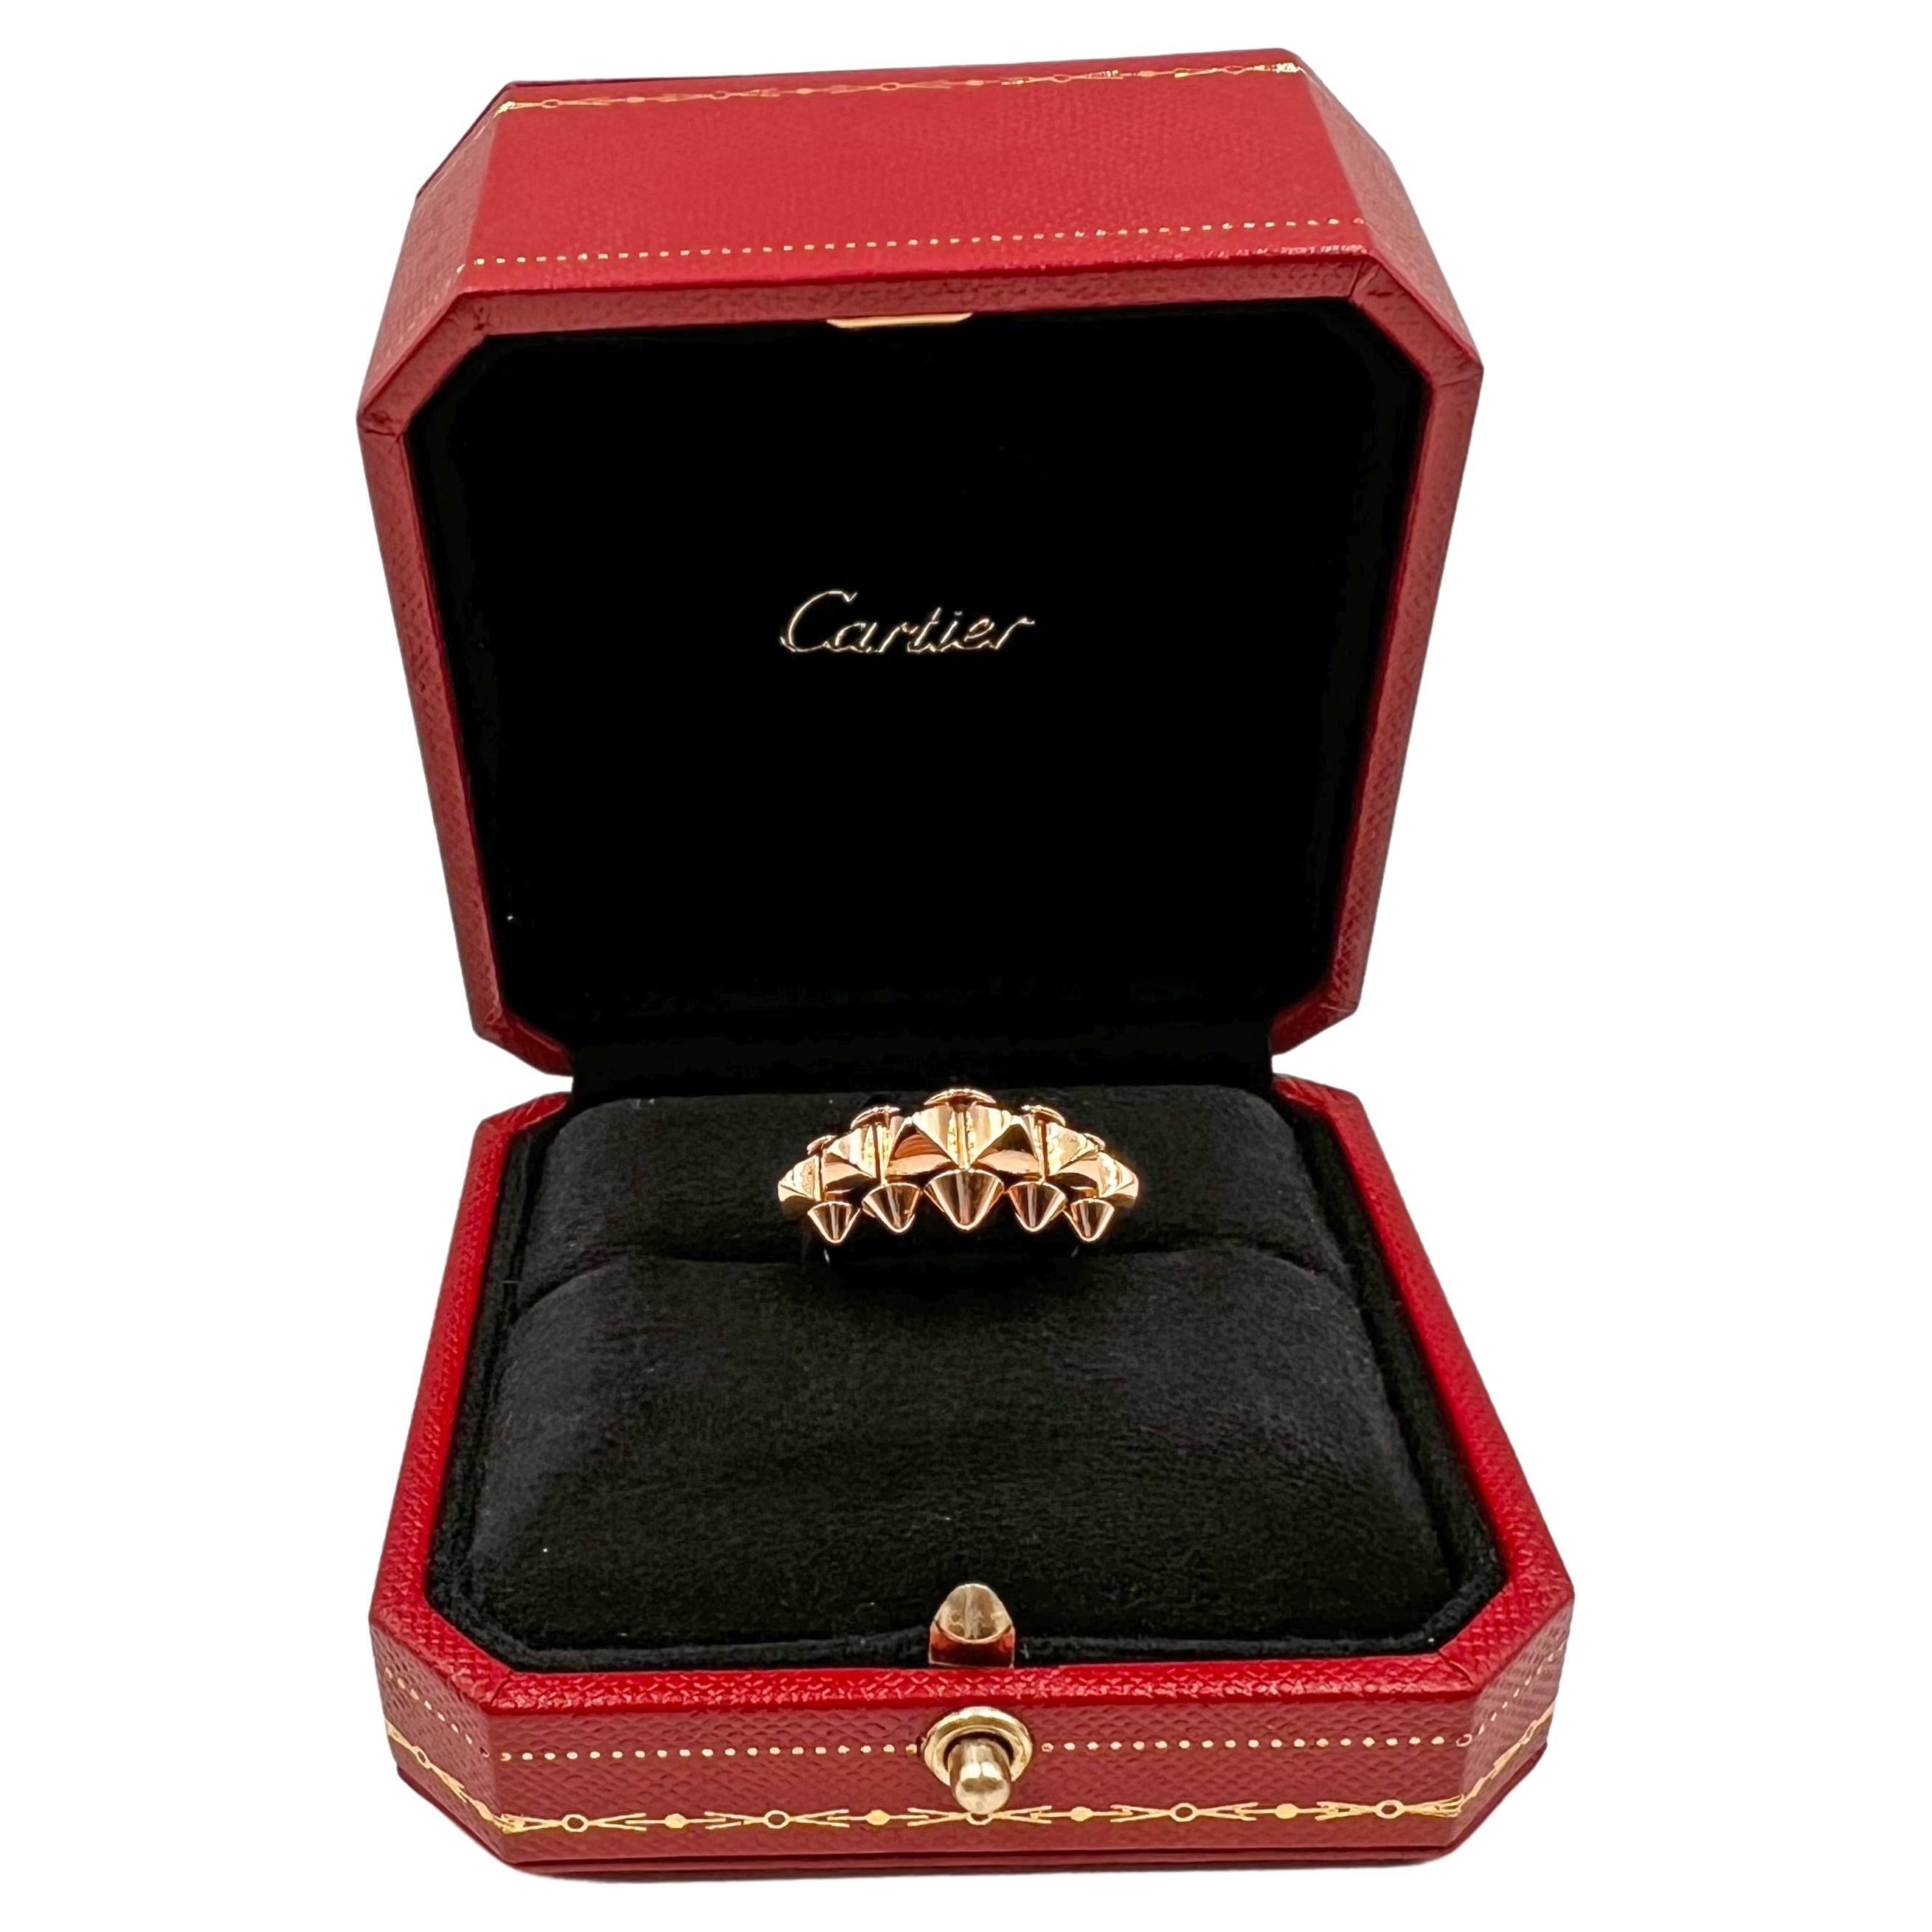 Cette version de taille moyenne de la bague de Clash de Cartier en or rose 18 carats comprend la rangée signature de clous carrés à mi-hauteur de l'anneau, ainsi qu'une solide tige polie dans le bas. La rangée centrale comporte six gros clous